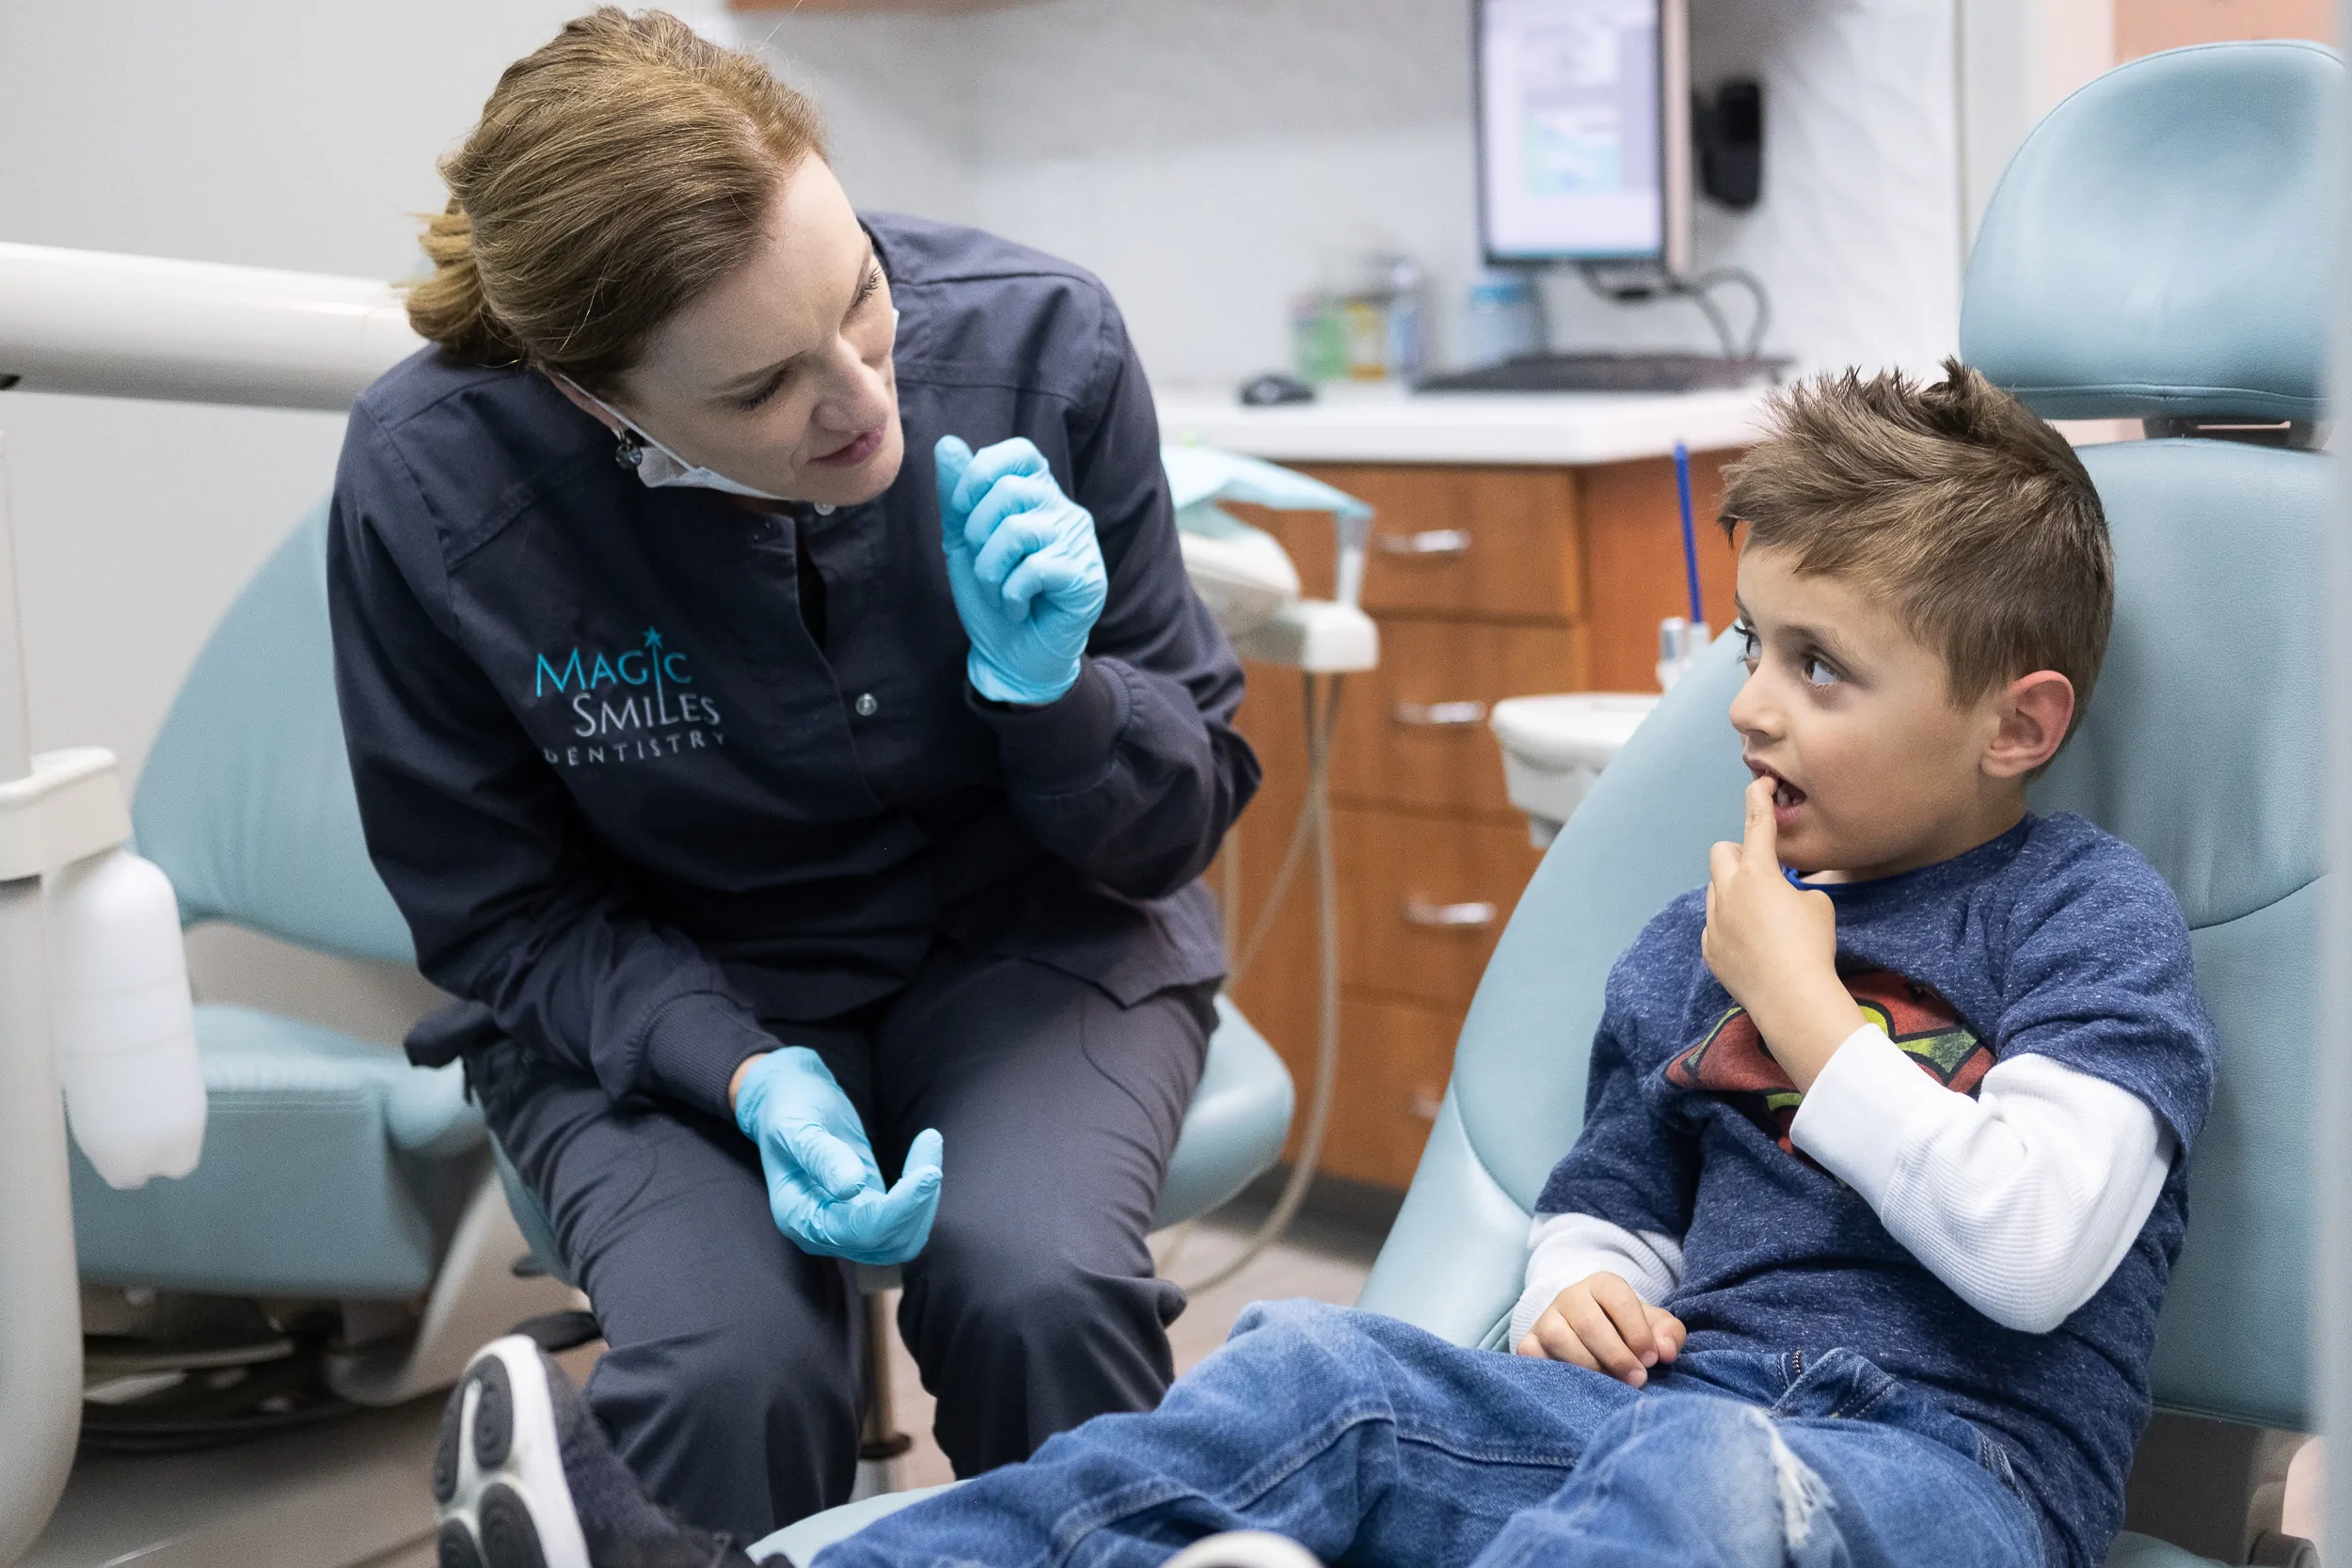 Patients Magic Smiles Dentistry 2019 El Dorado Hills California Dentist 84 1 - Contact Magic Smiles